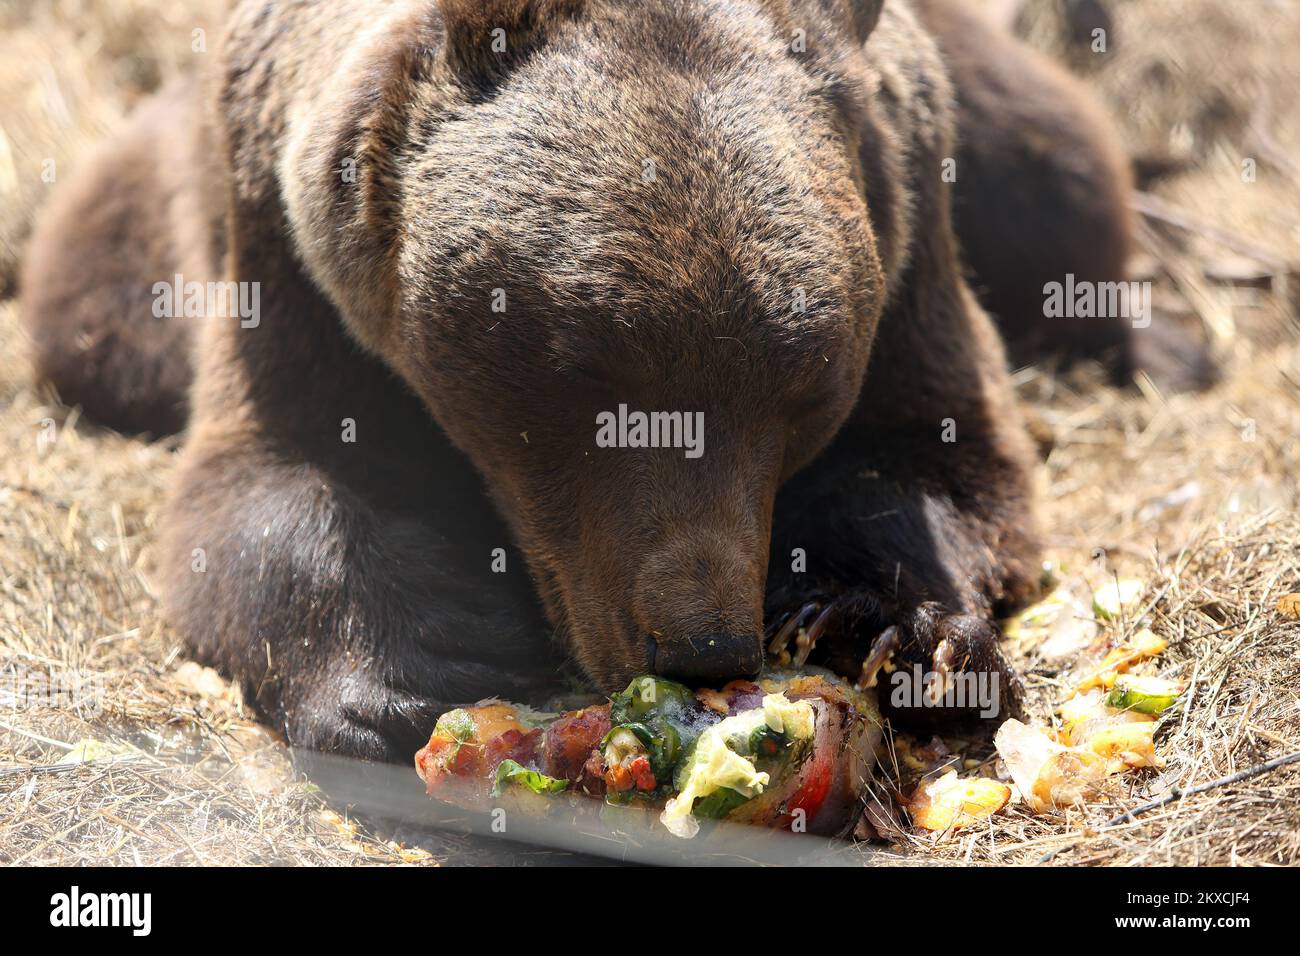 12.08.2019., Kuterevo, Kroatien - das Bärenschutzgebiet befindet sich in Kuterevo, in der Nähe von Otocac in der Lika-Region, Heimat vieler Tausender Braunbären in Kroatien. In Kuterevo gibt es derzeit 10 Bären, vier unter zehn Jahren und sechs ältere. Der älteste Bär Bruno ist 40 Jahre alt und der jüngste Matija ist sieben Monate alt. Der Bär wird von 16 Freiwilligen aus der ganzen Welt gepflegt, die die Bären säubern, füttern und willkommen heißen. Bären werden mit Obst, Gemüse und Getreide gefüttert, während des Sommers erhalten sie als Erfrischungseis und gefrorenes Obst und Gemüse. Das Refugium wird von mor besucht Stockfoto